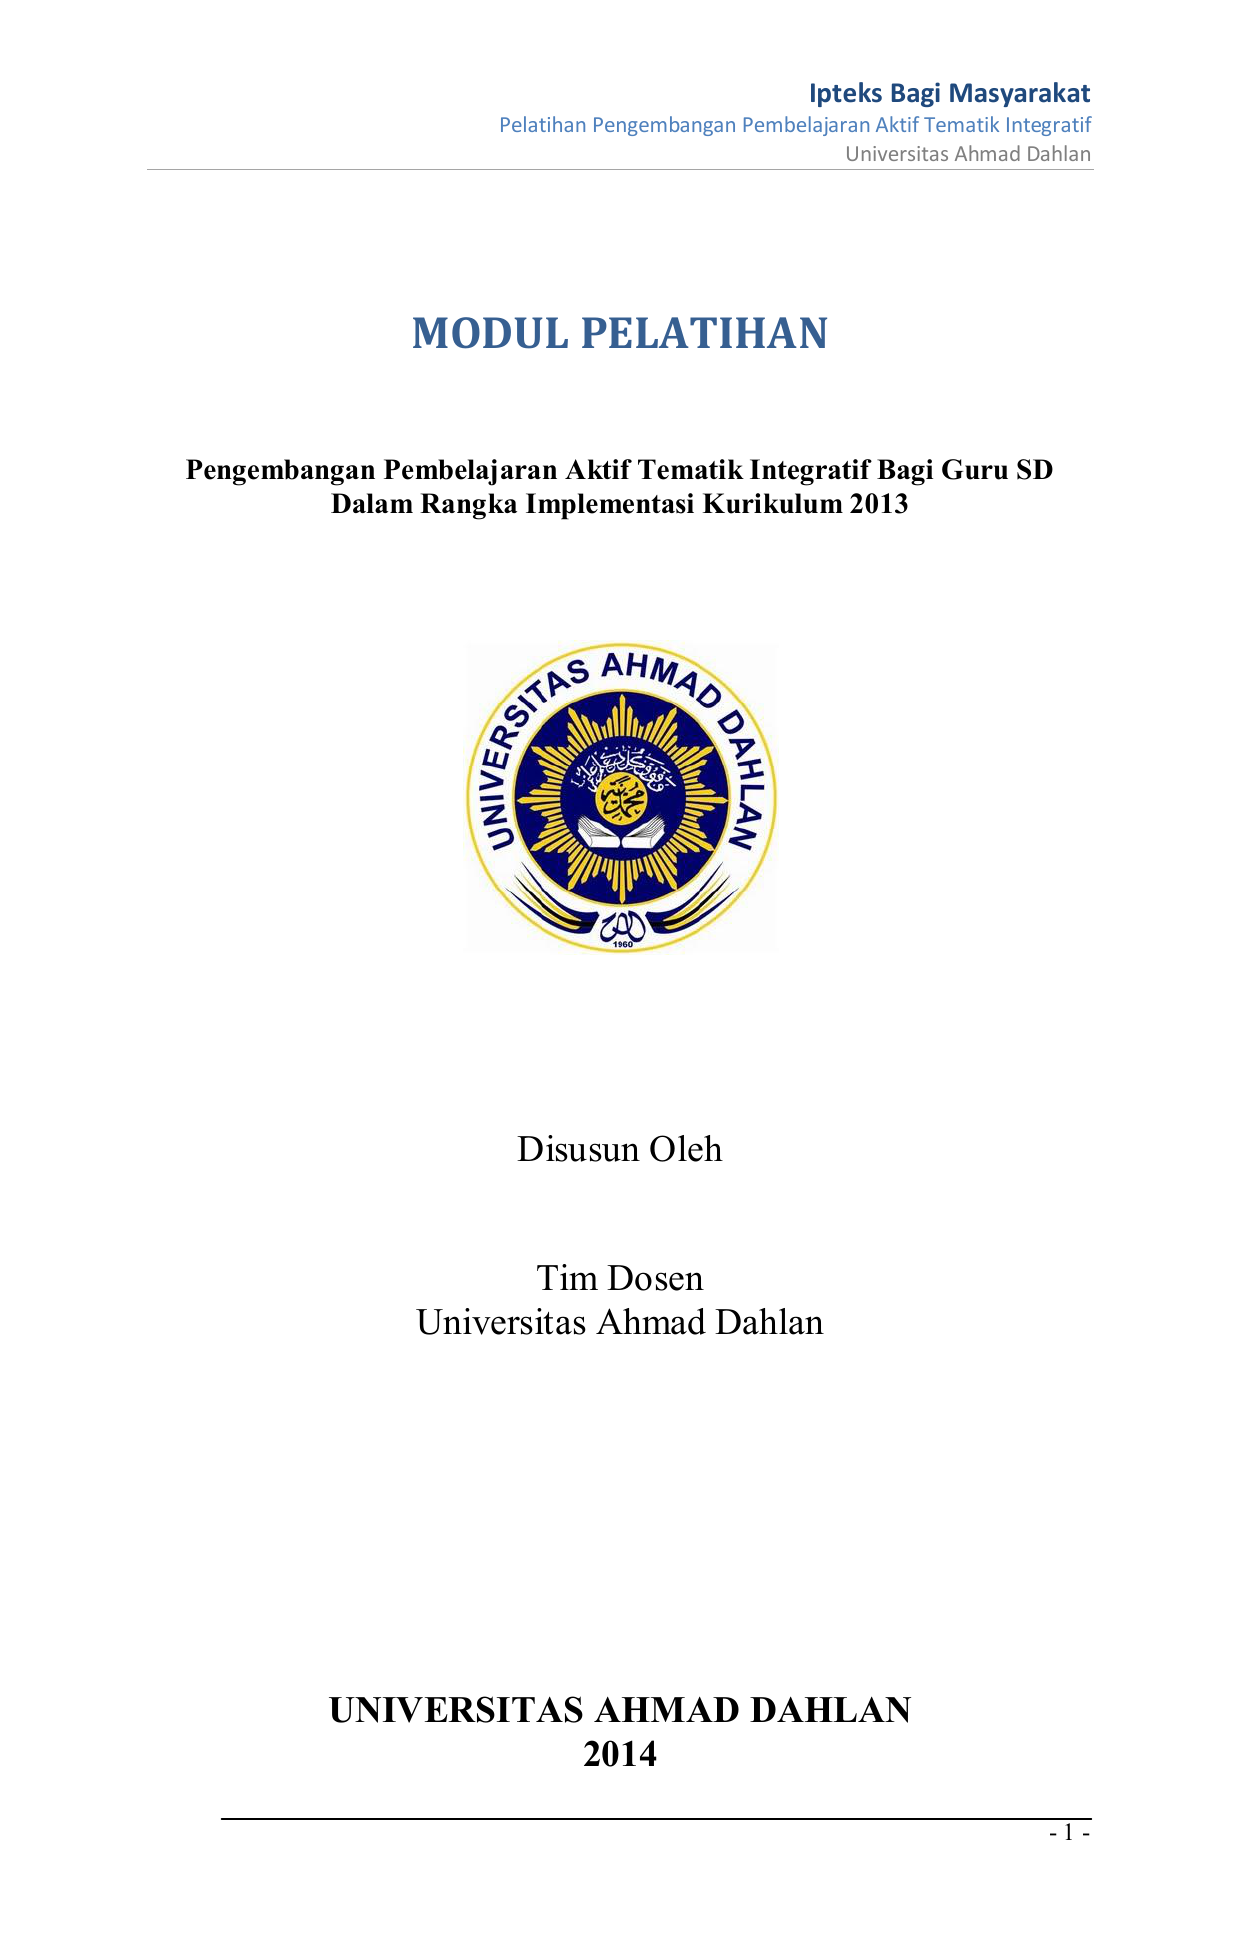 Integratif Bagi Guru SD Dalam Rangka Implementasi Kurikulum 2013 Disusun Oleh Tim Dosen Universitas Ahmad Dahlan UNIVERSITAS AHMAD DAHLAN 2014 1